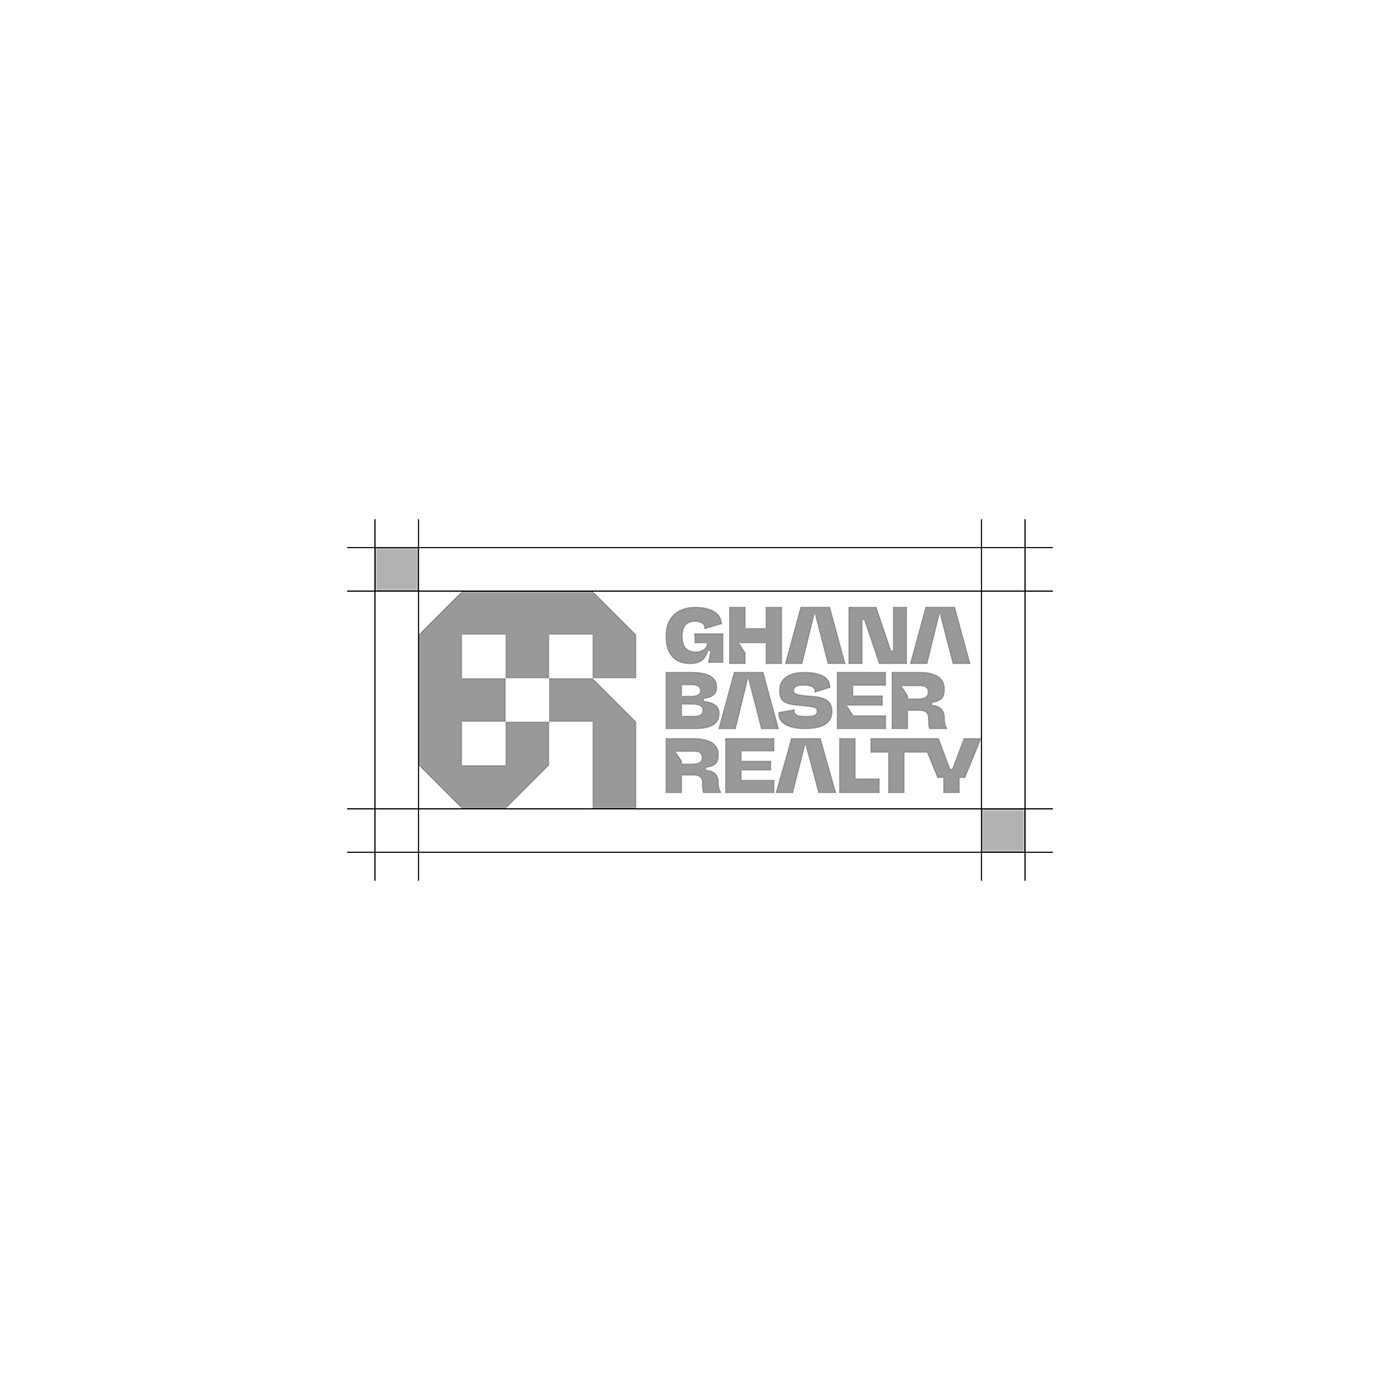 logo brand identity branding  identity Brand Design visual identity real estate realty Real estate logo Ghana